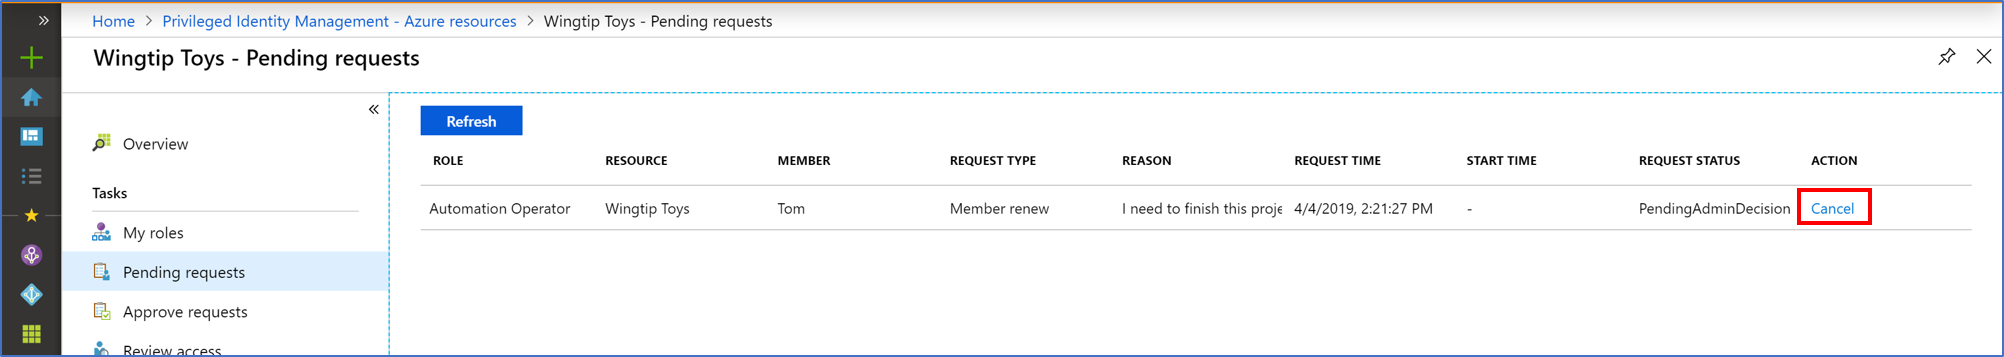 Captura de tela dos recursos do Azure – página de Solicitações pendentes listando solicitações pendentes e um link para Cancelar.